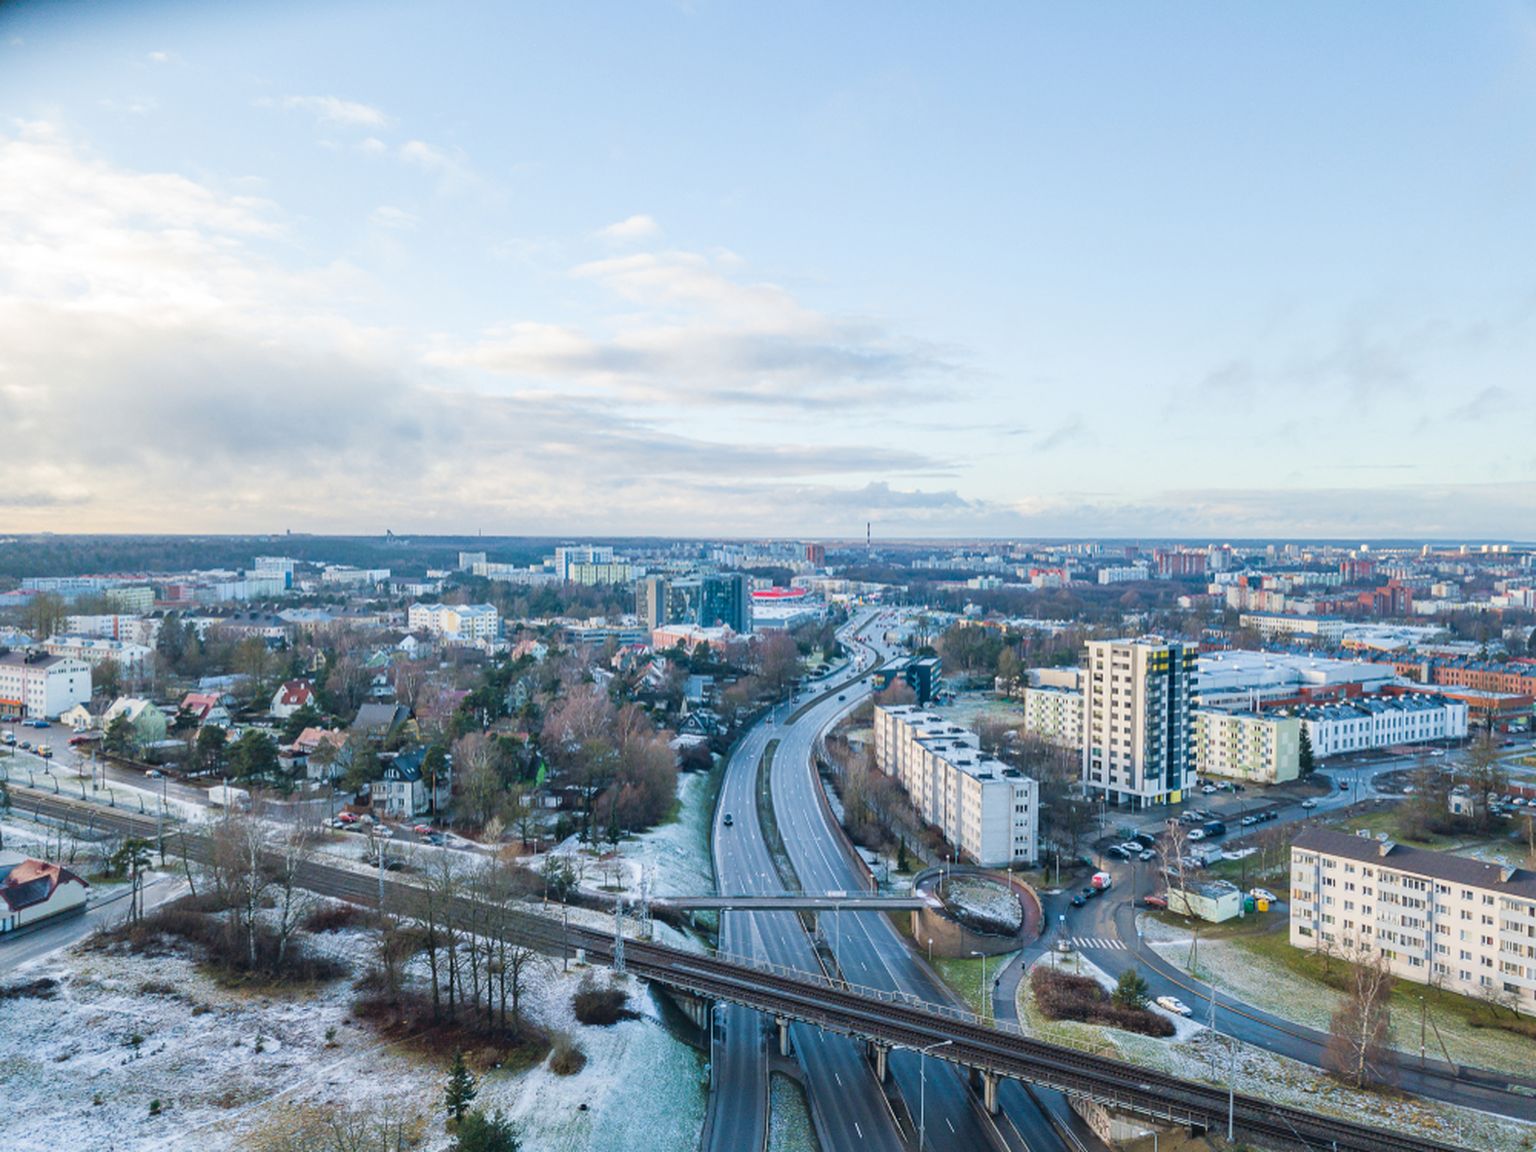 Eesti kliimas on täna kõige energiatõhusam kütteliik maaküte.